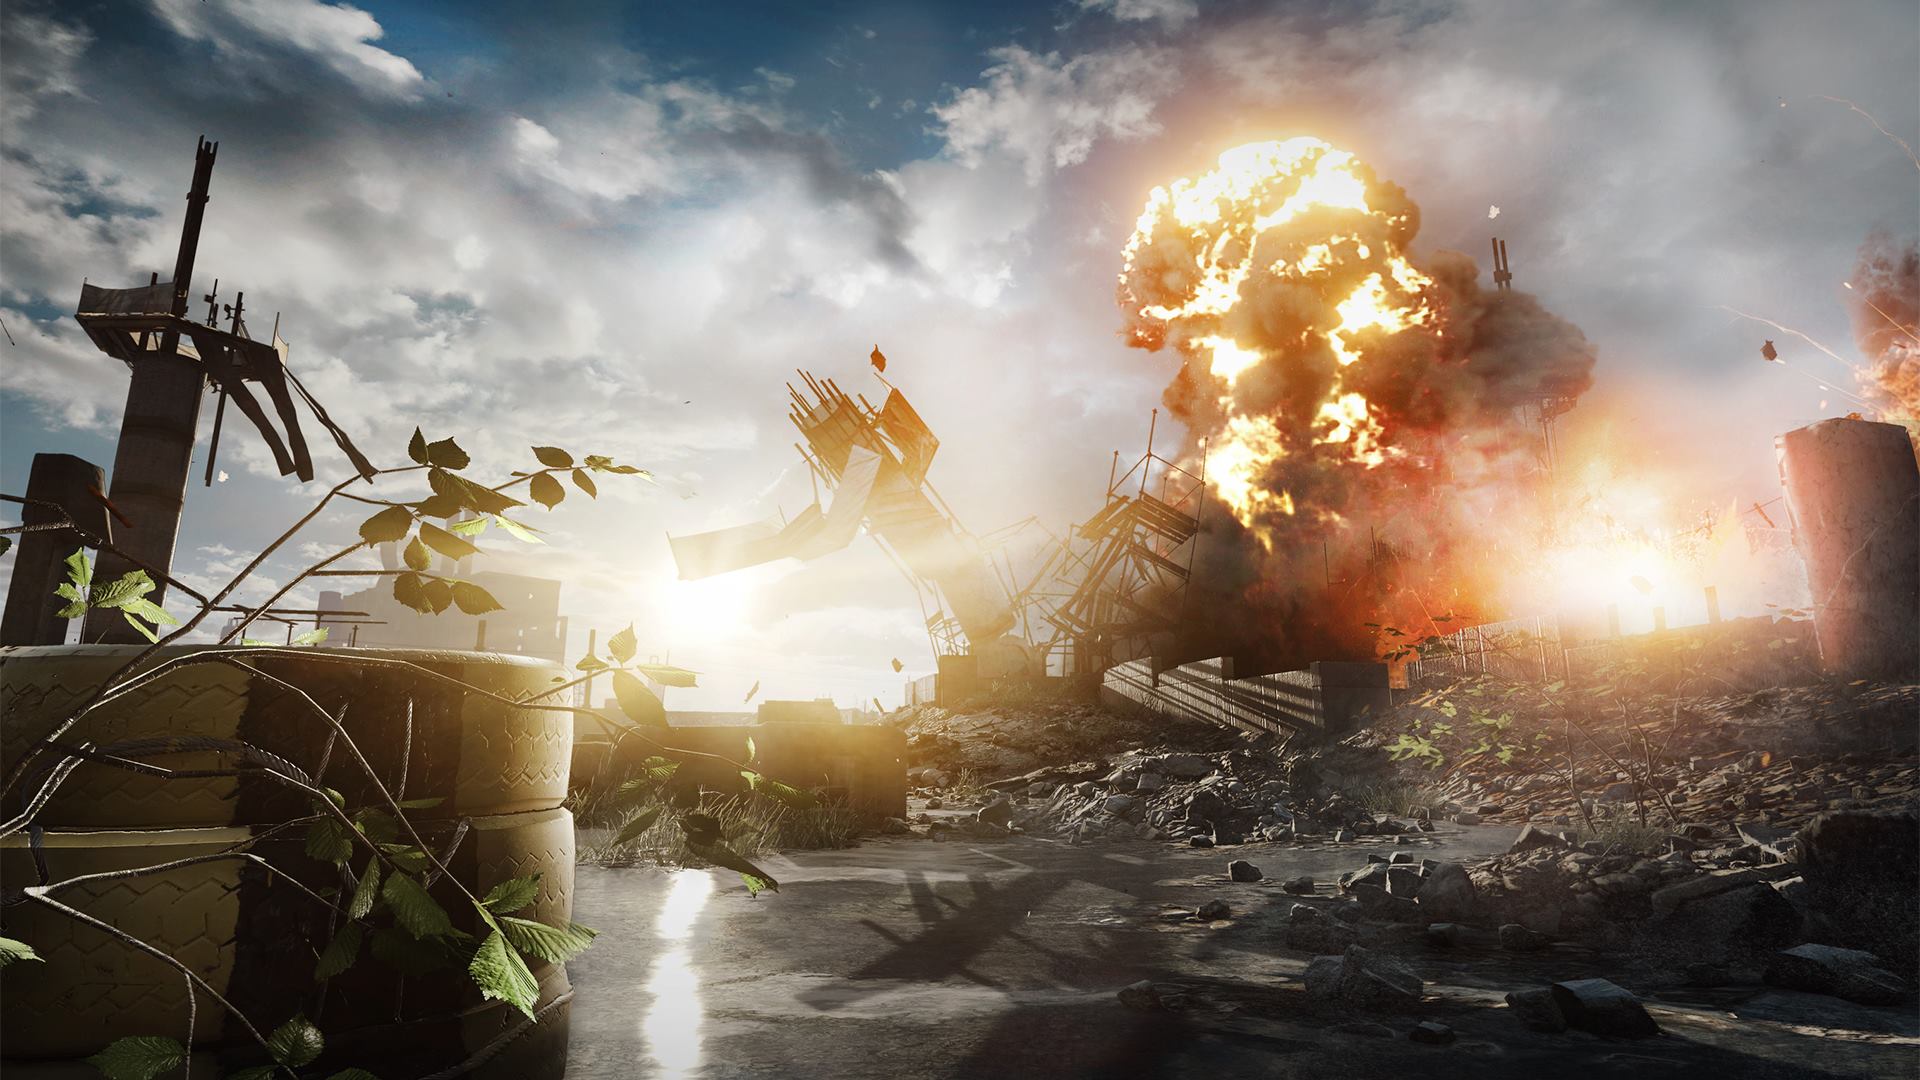 Data premiery Battlefield 4 ujawniona! China Rising pierwszym DLC; nowe screeny